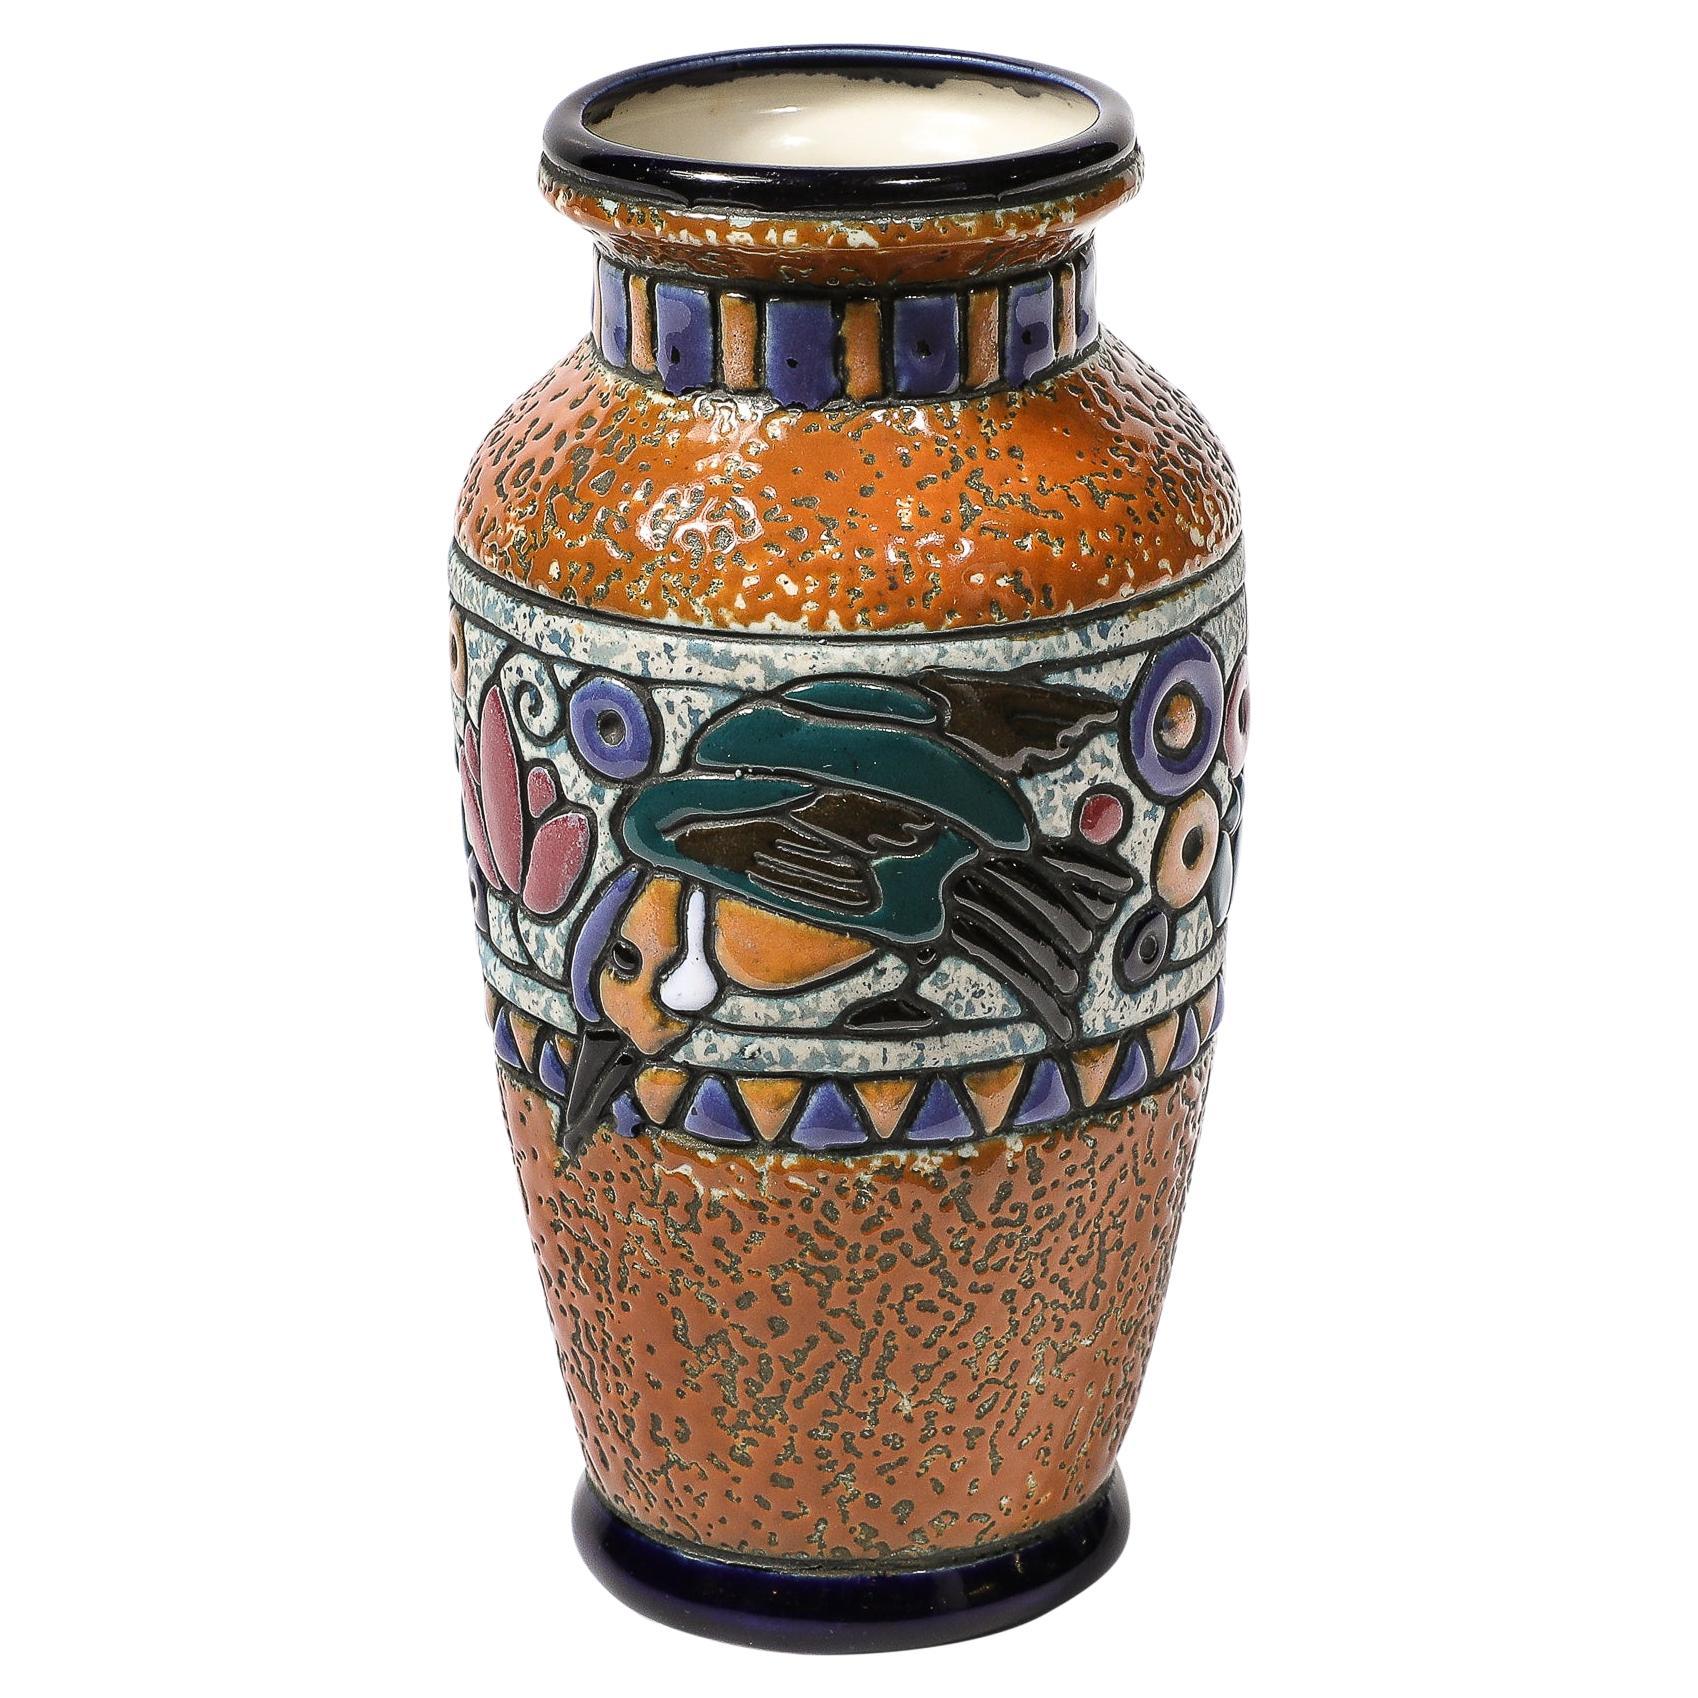 Jarrón de Cerámica Art Decó con Colibrí en Vidriado Lineal Multicolor firmado Amphora